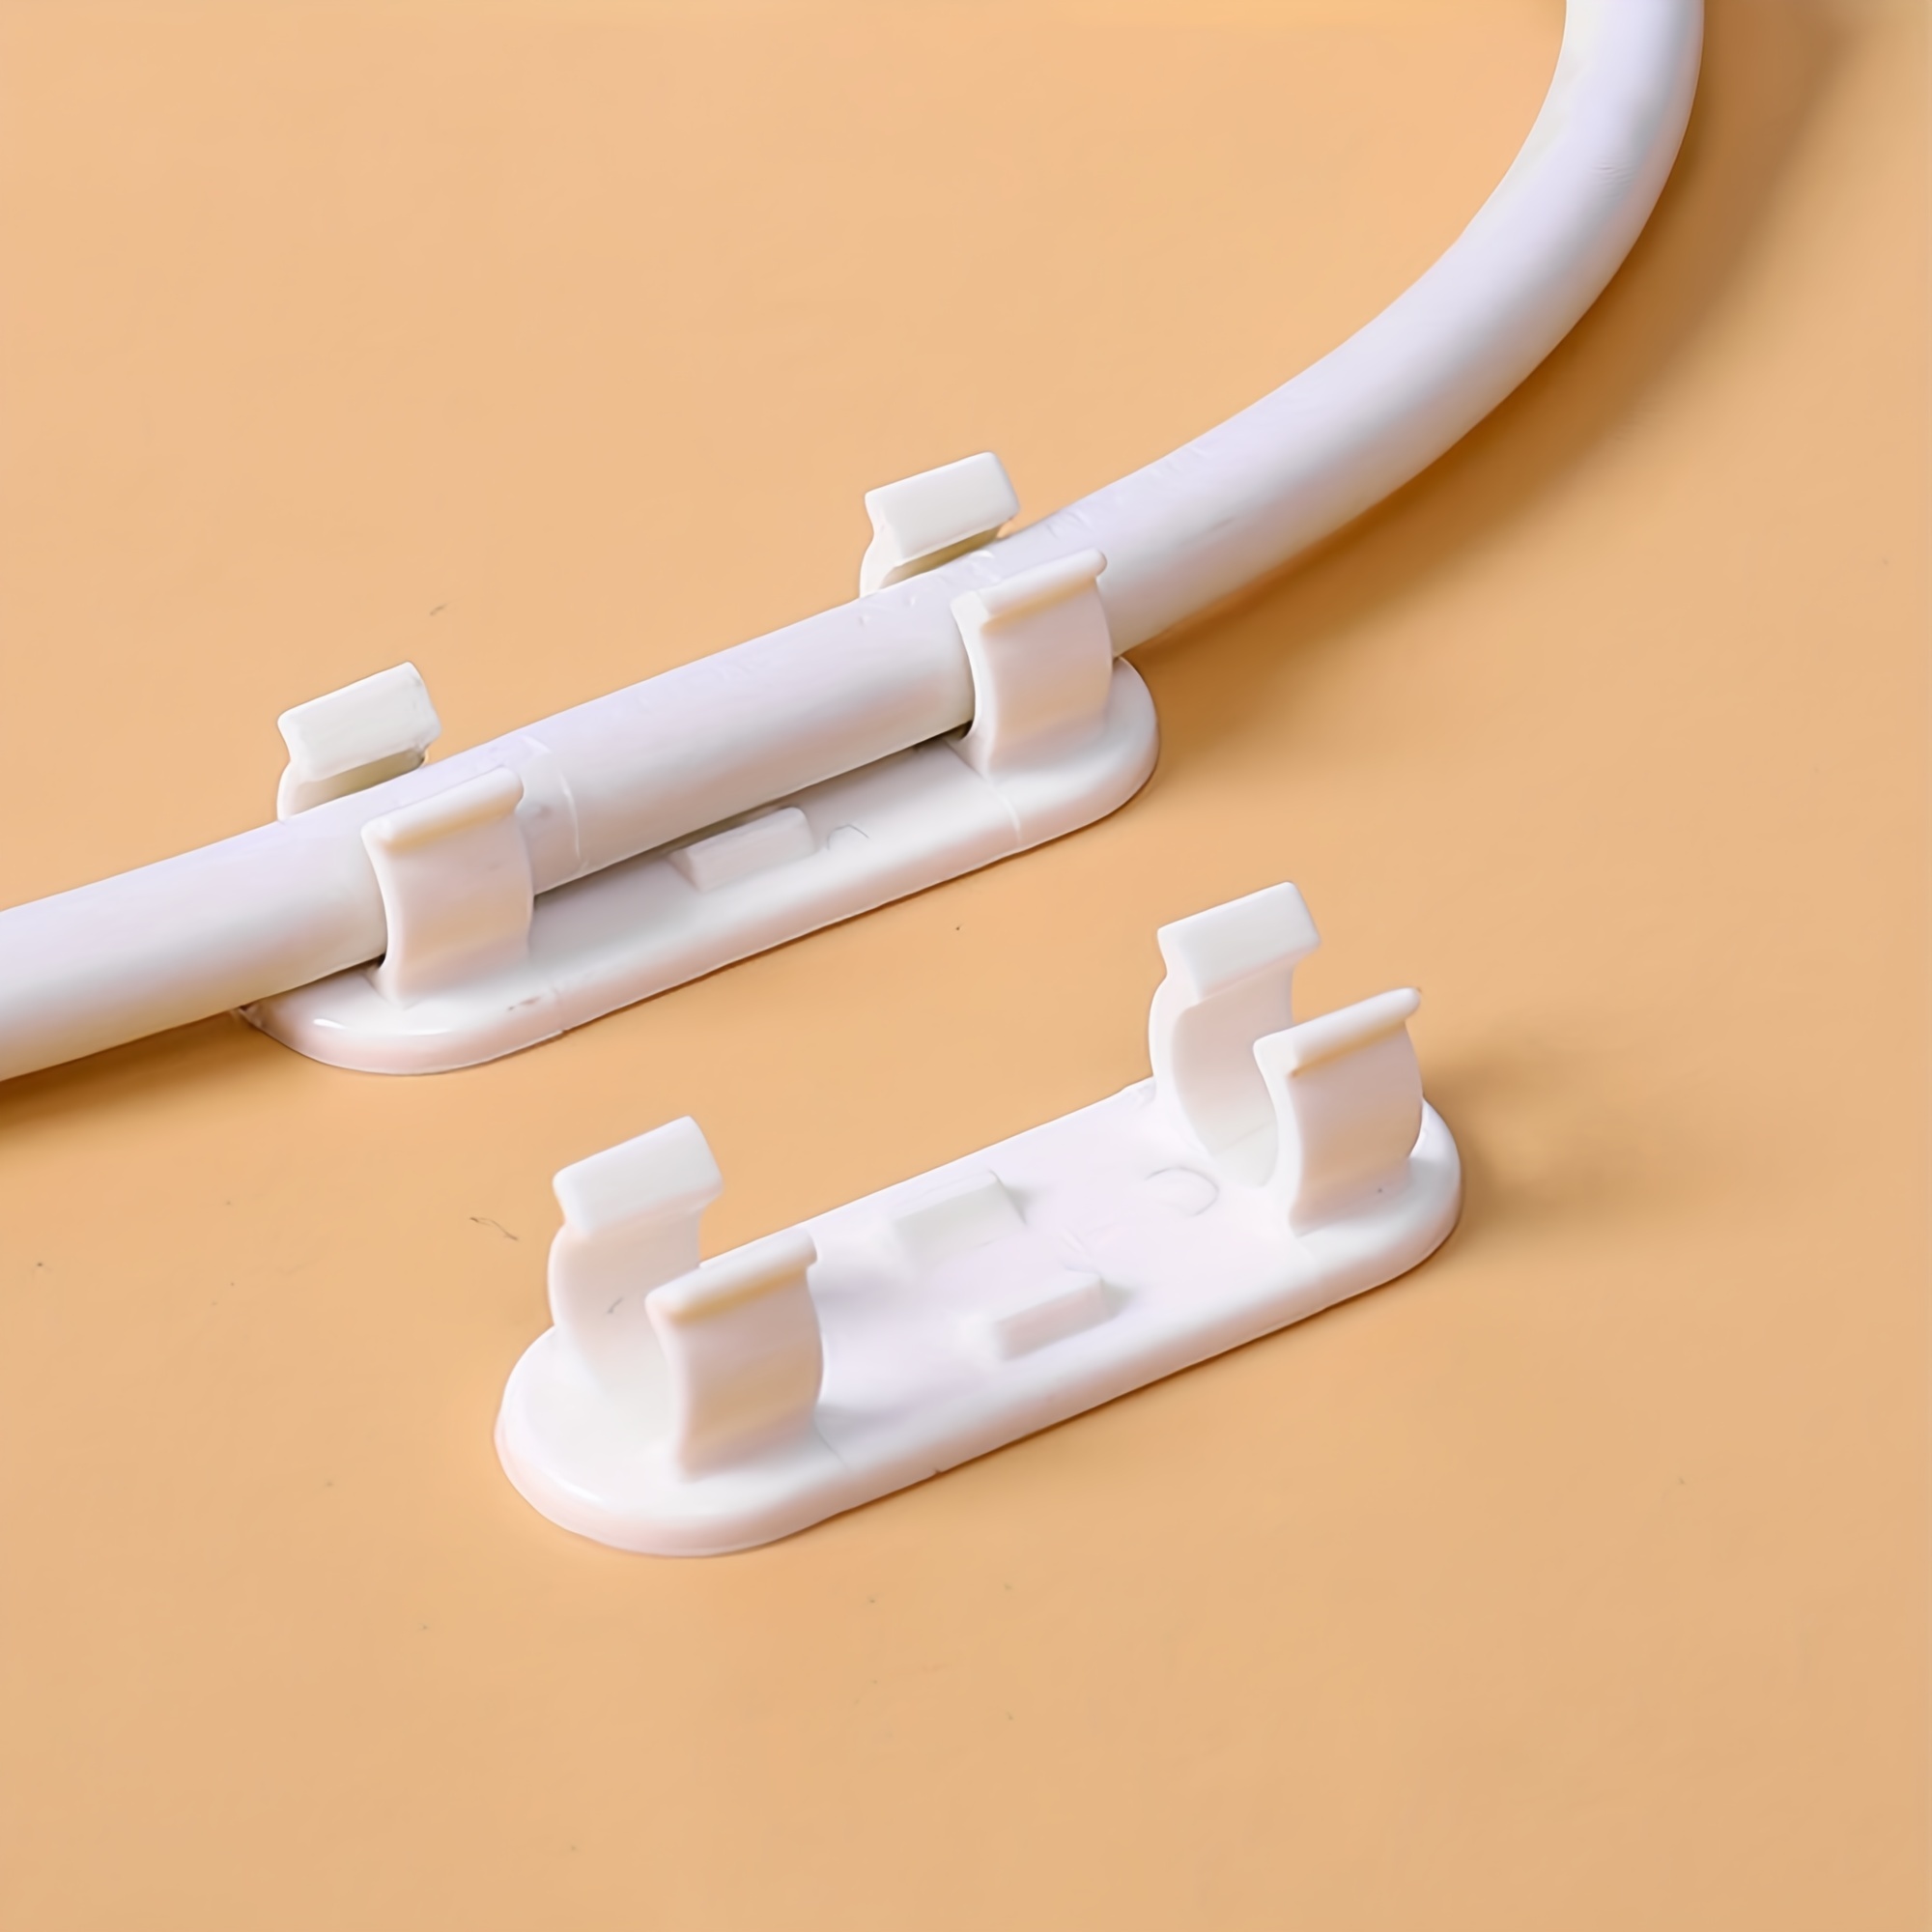 Compre una variedad de clips adhesivos para cables al por mayor y al por  menor